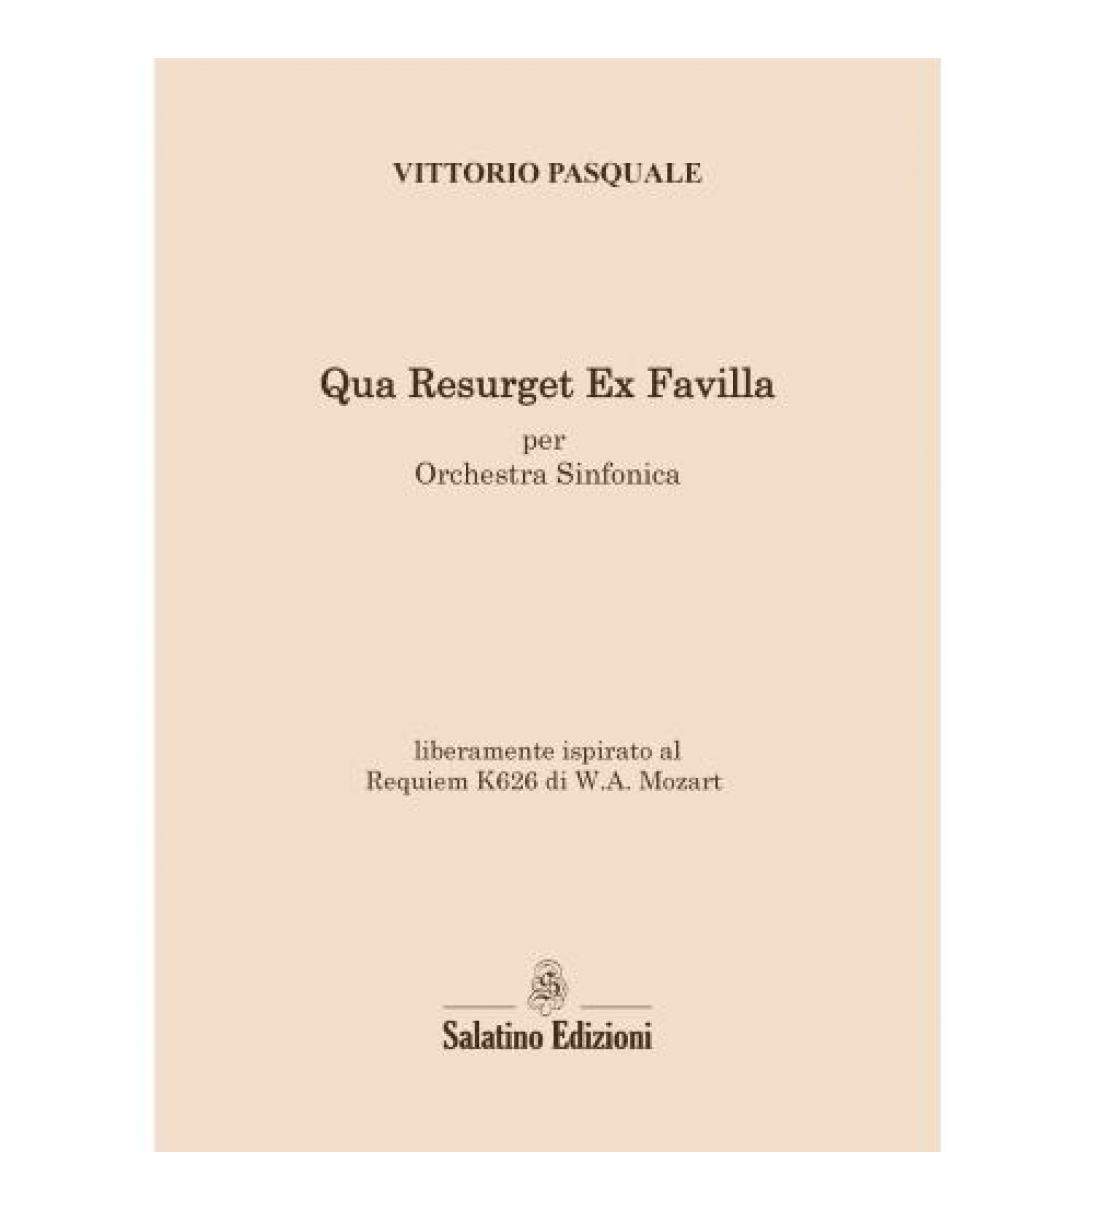 Qua Resurget Ex Favilla - per Orchestra Sinfonica